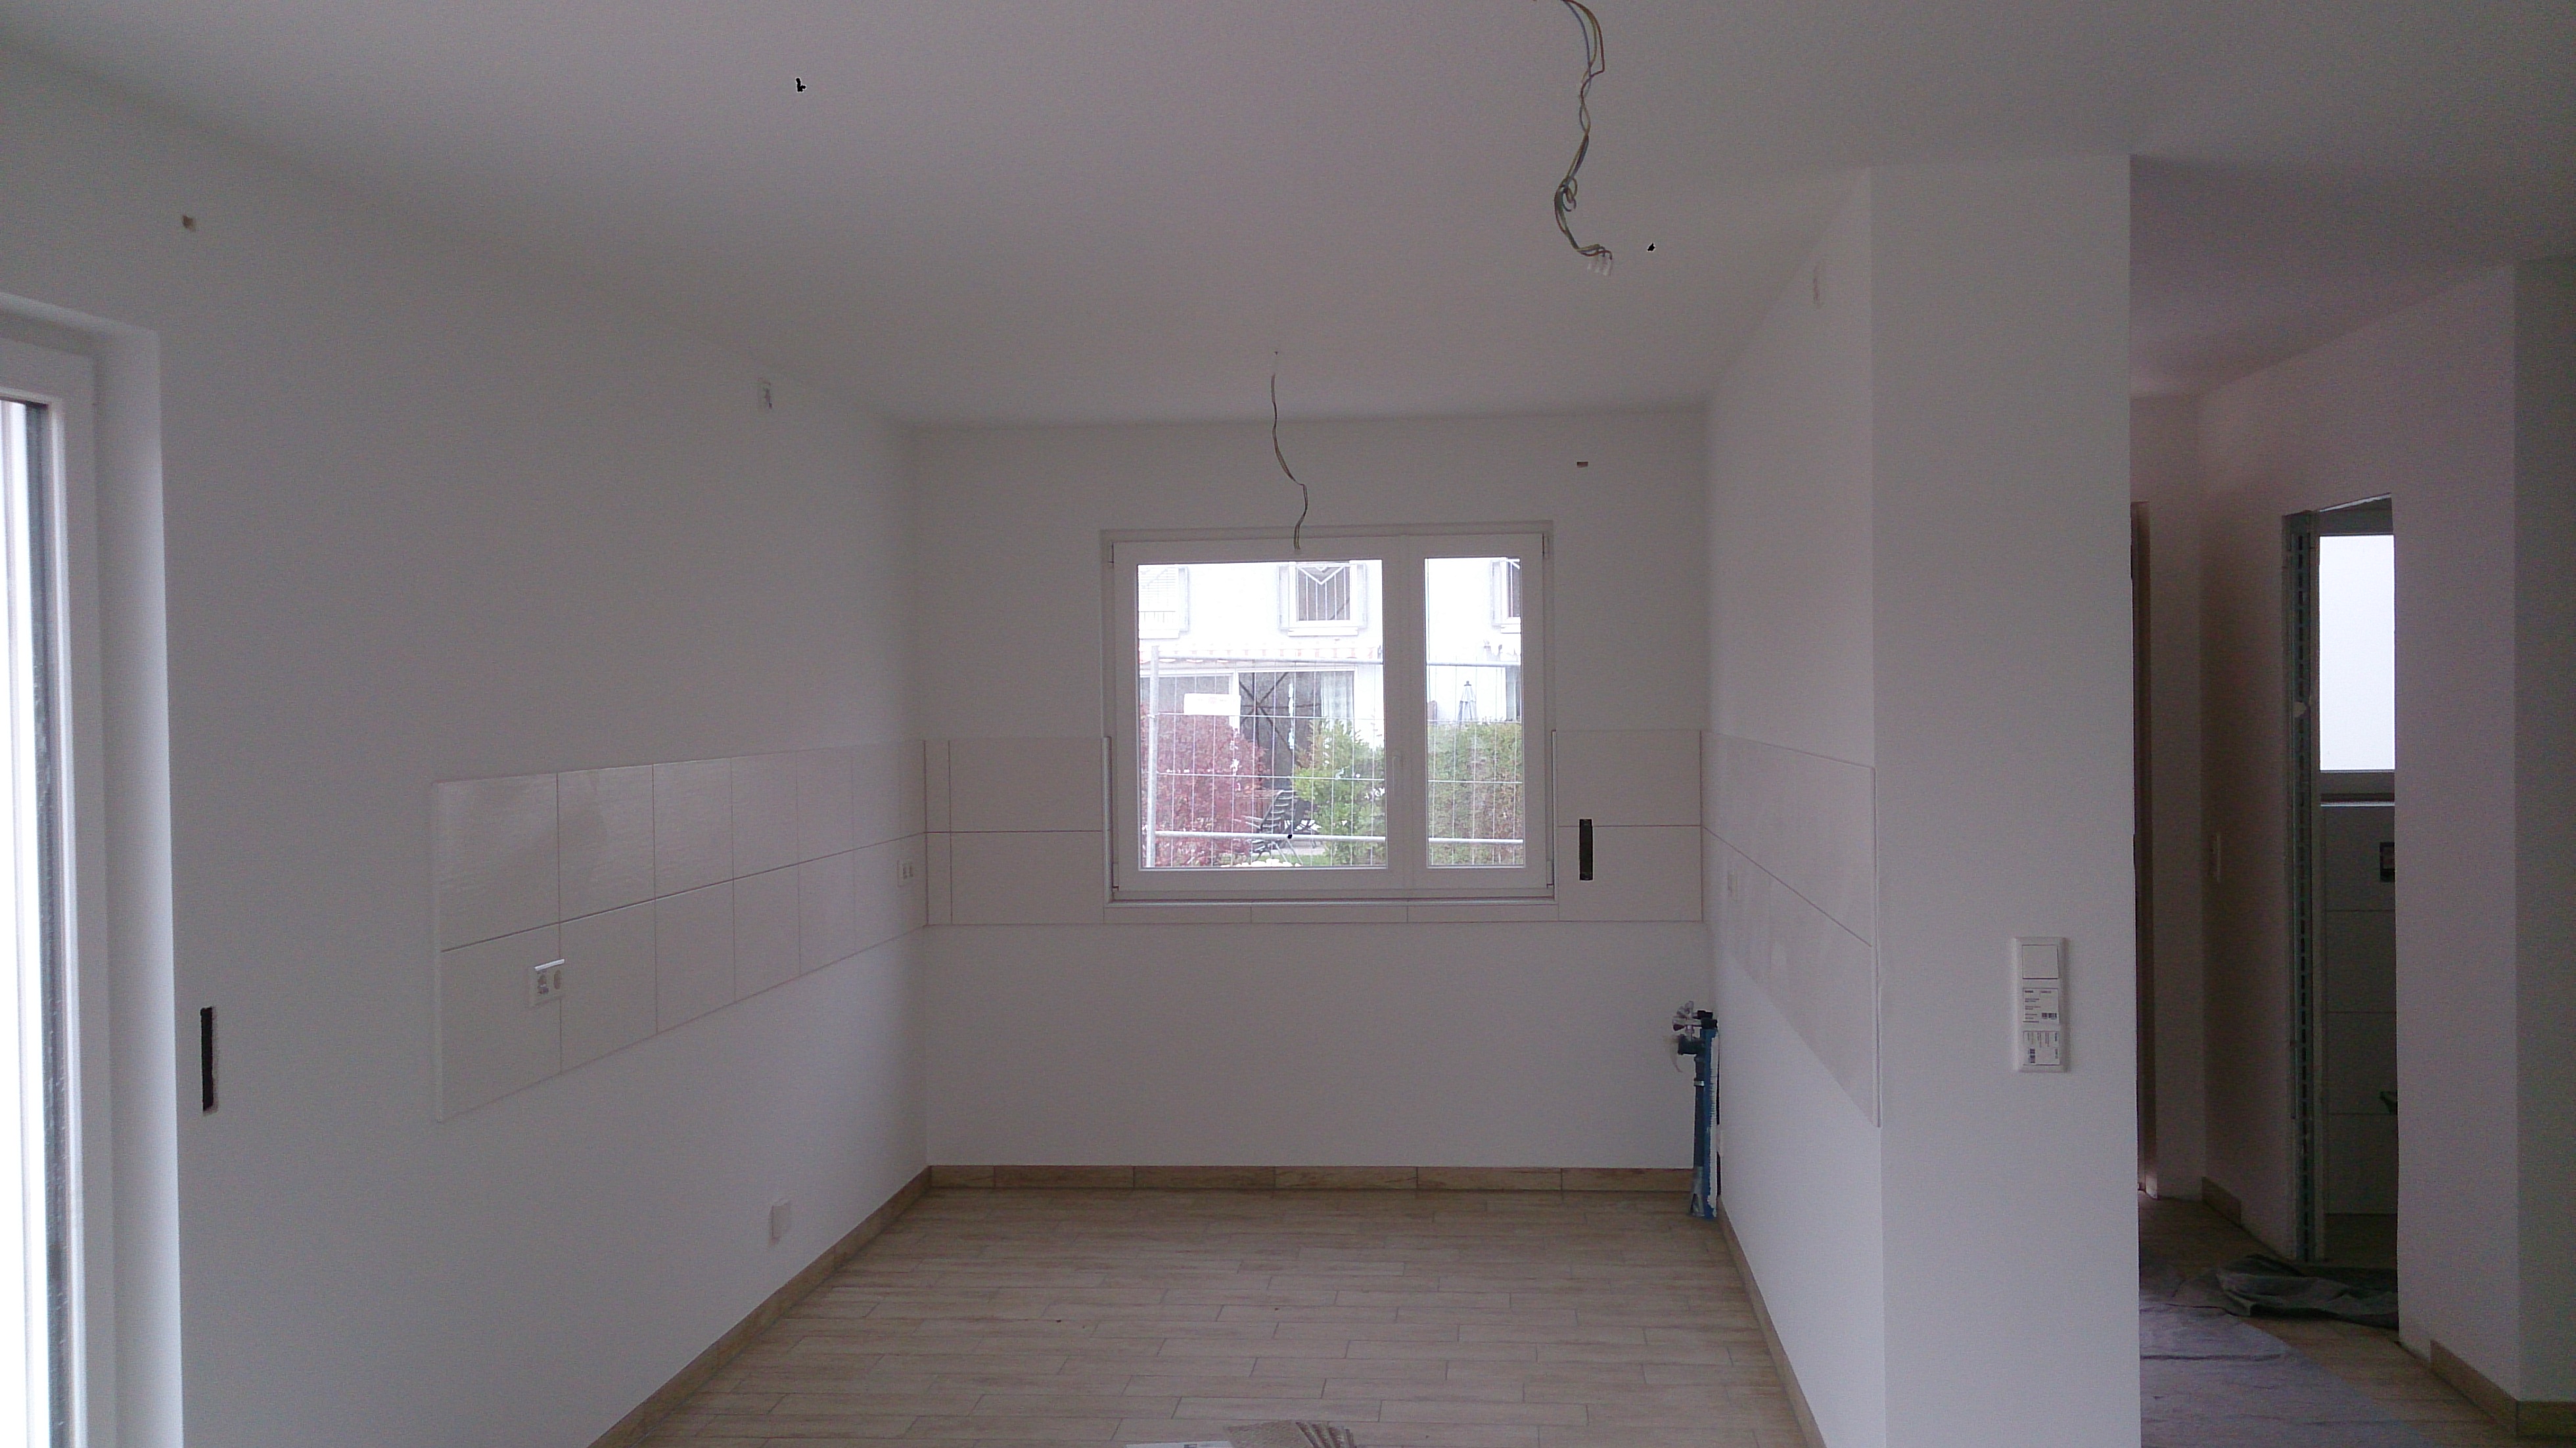 Küchenbereich Decke Raufaser und Wände glatt weiß
Objekt Netter Bau